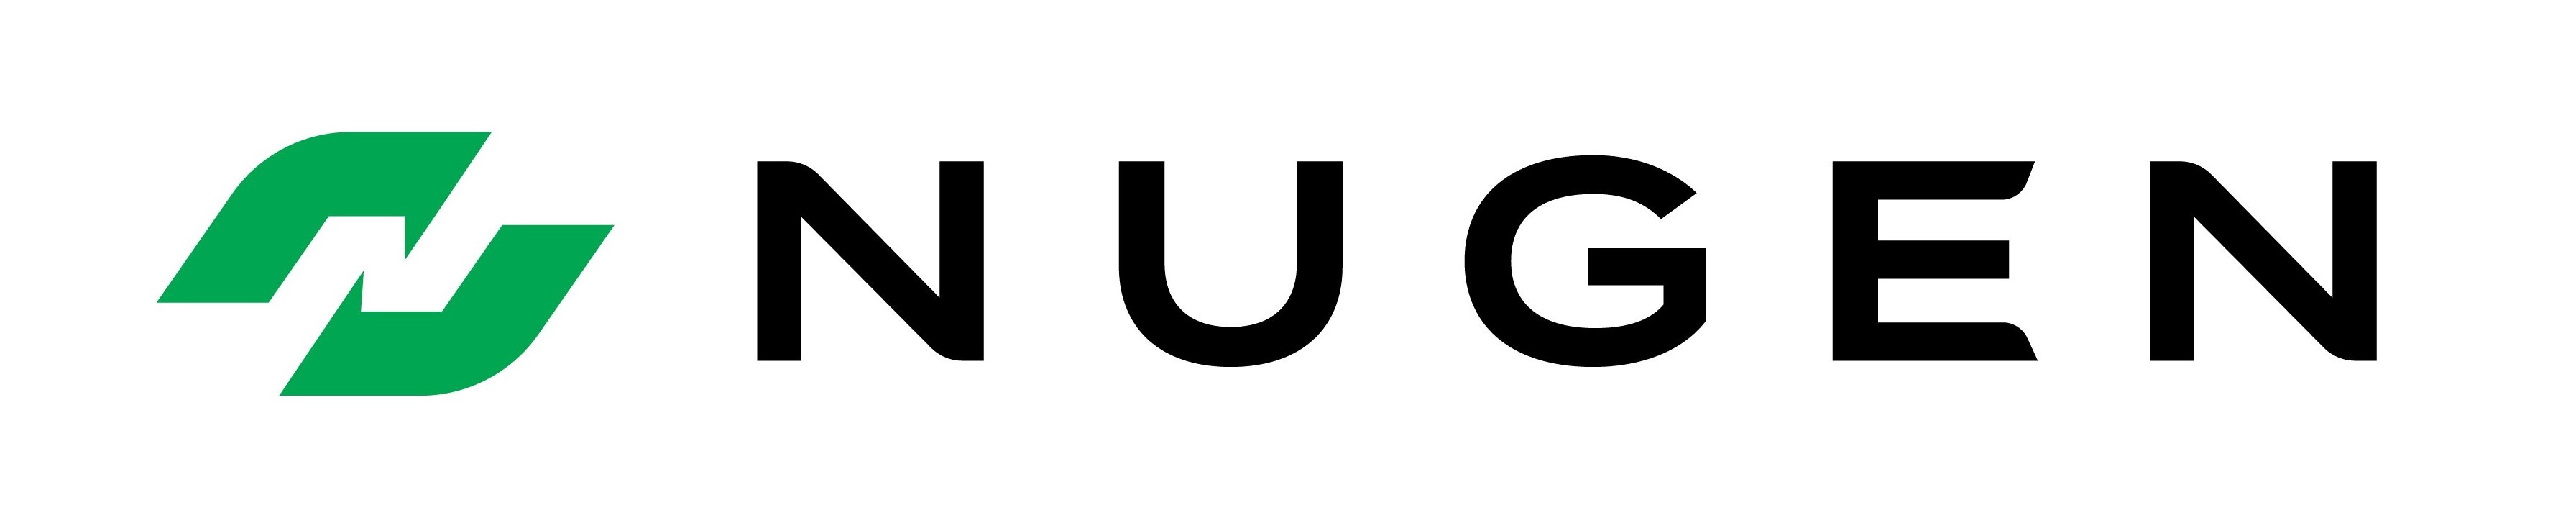 Nugen logo